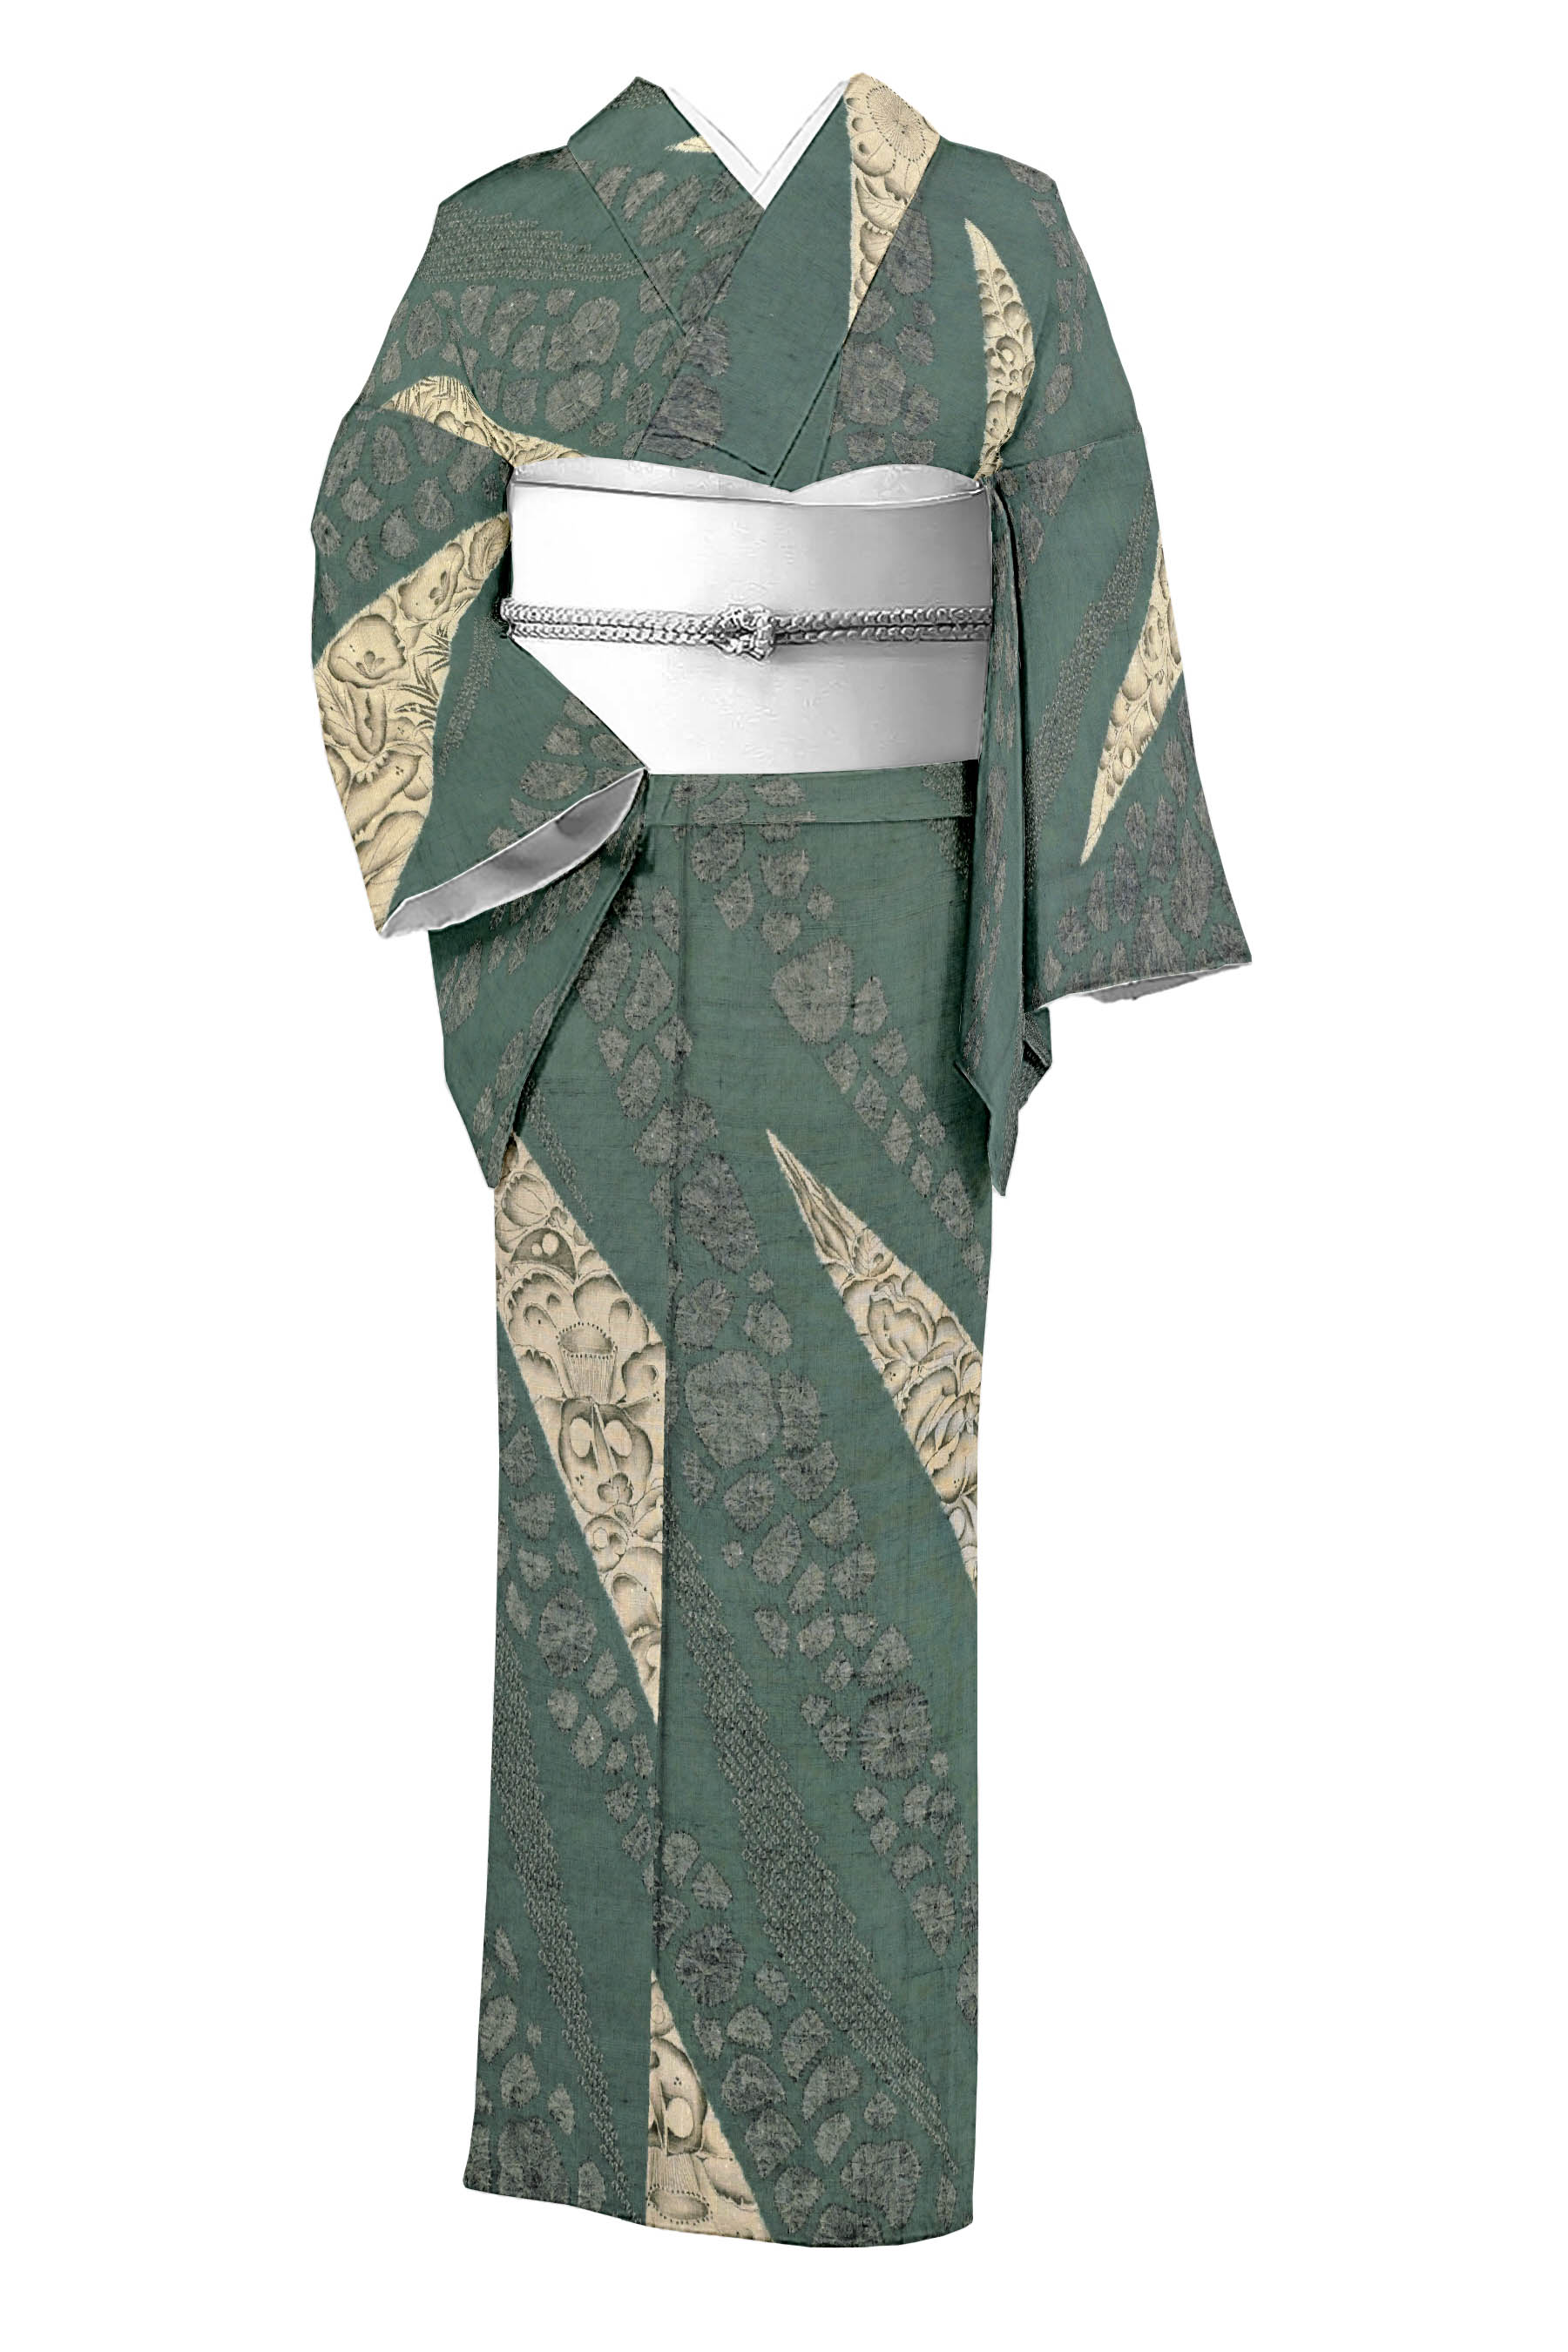 大脇一心の着物・帯の一覧|京都きもの市場【日本最大級の着物通販サイト】